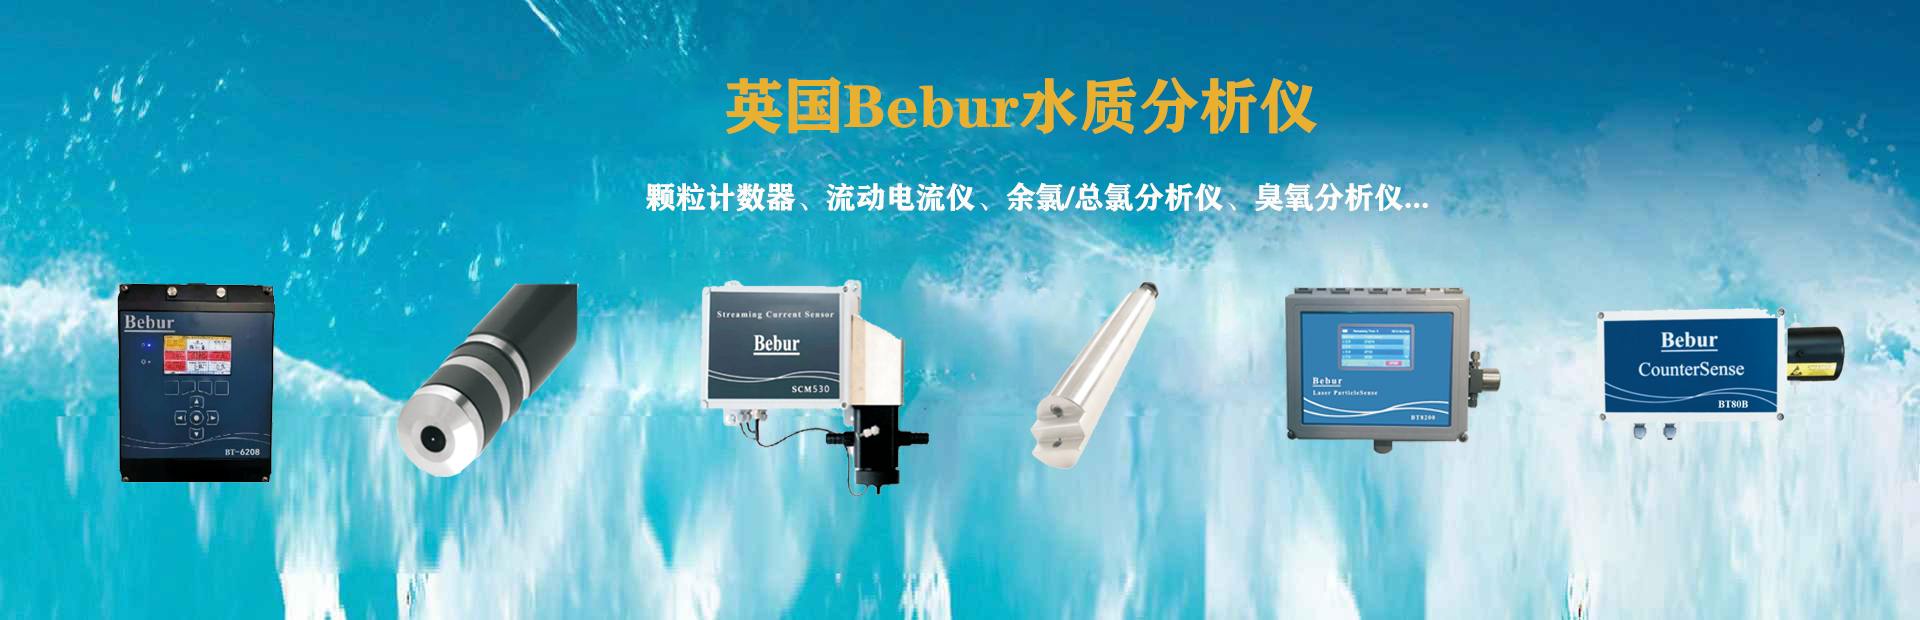 BT80B-Counter进口液体颗粒计数器系列产品